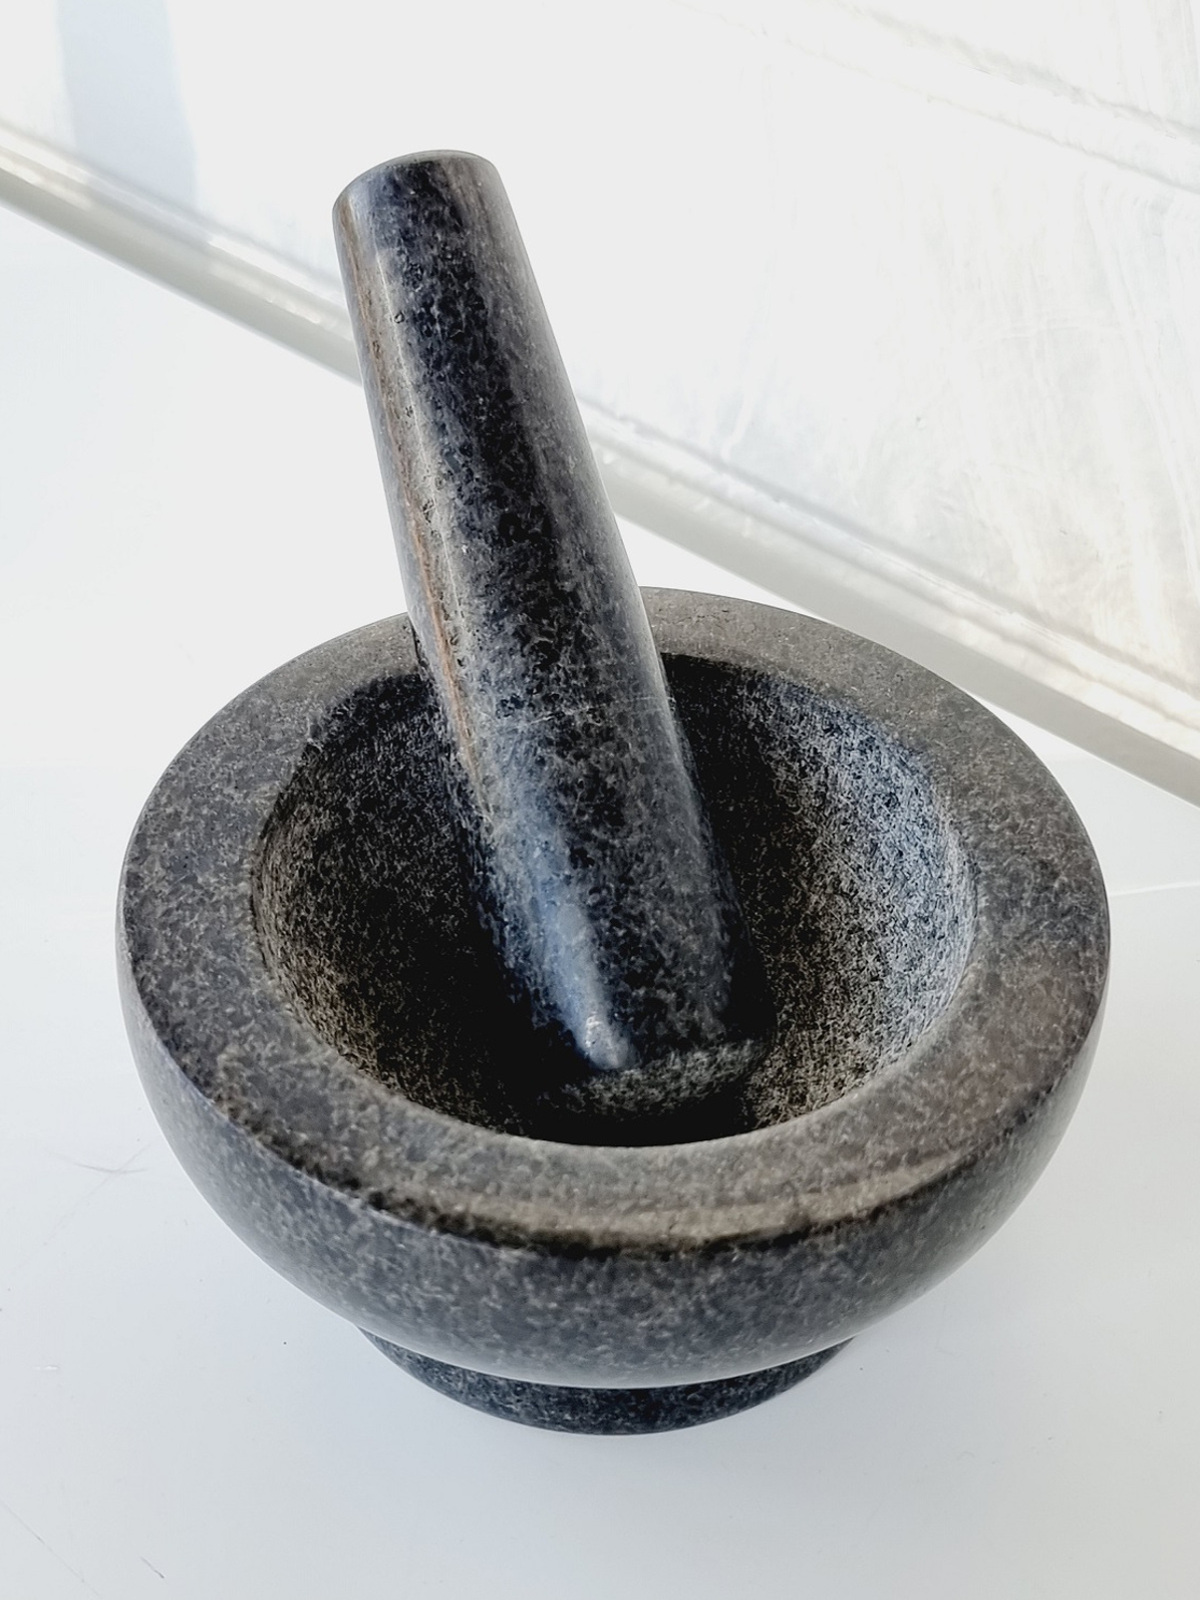 svart-mortel-i-granit-med-stot-2